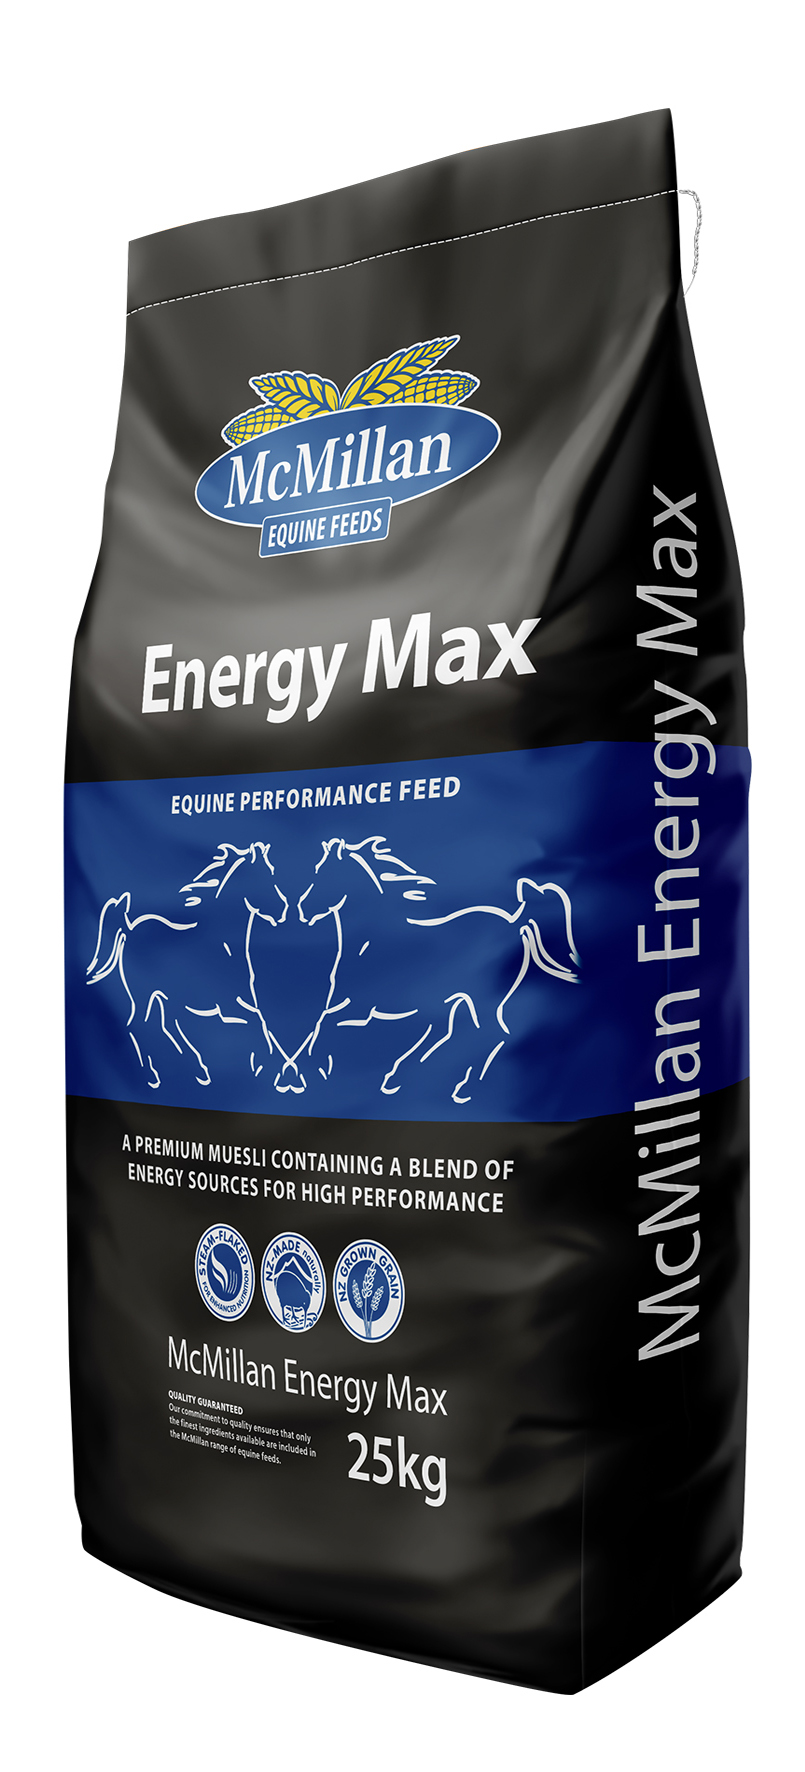 Energy Max